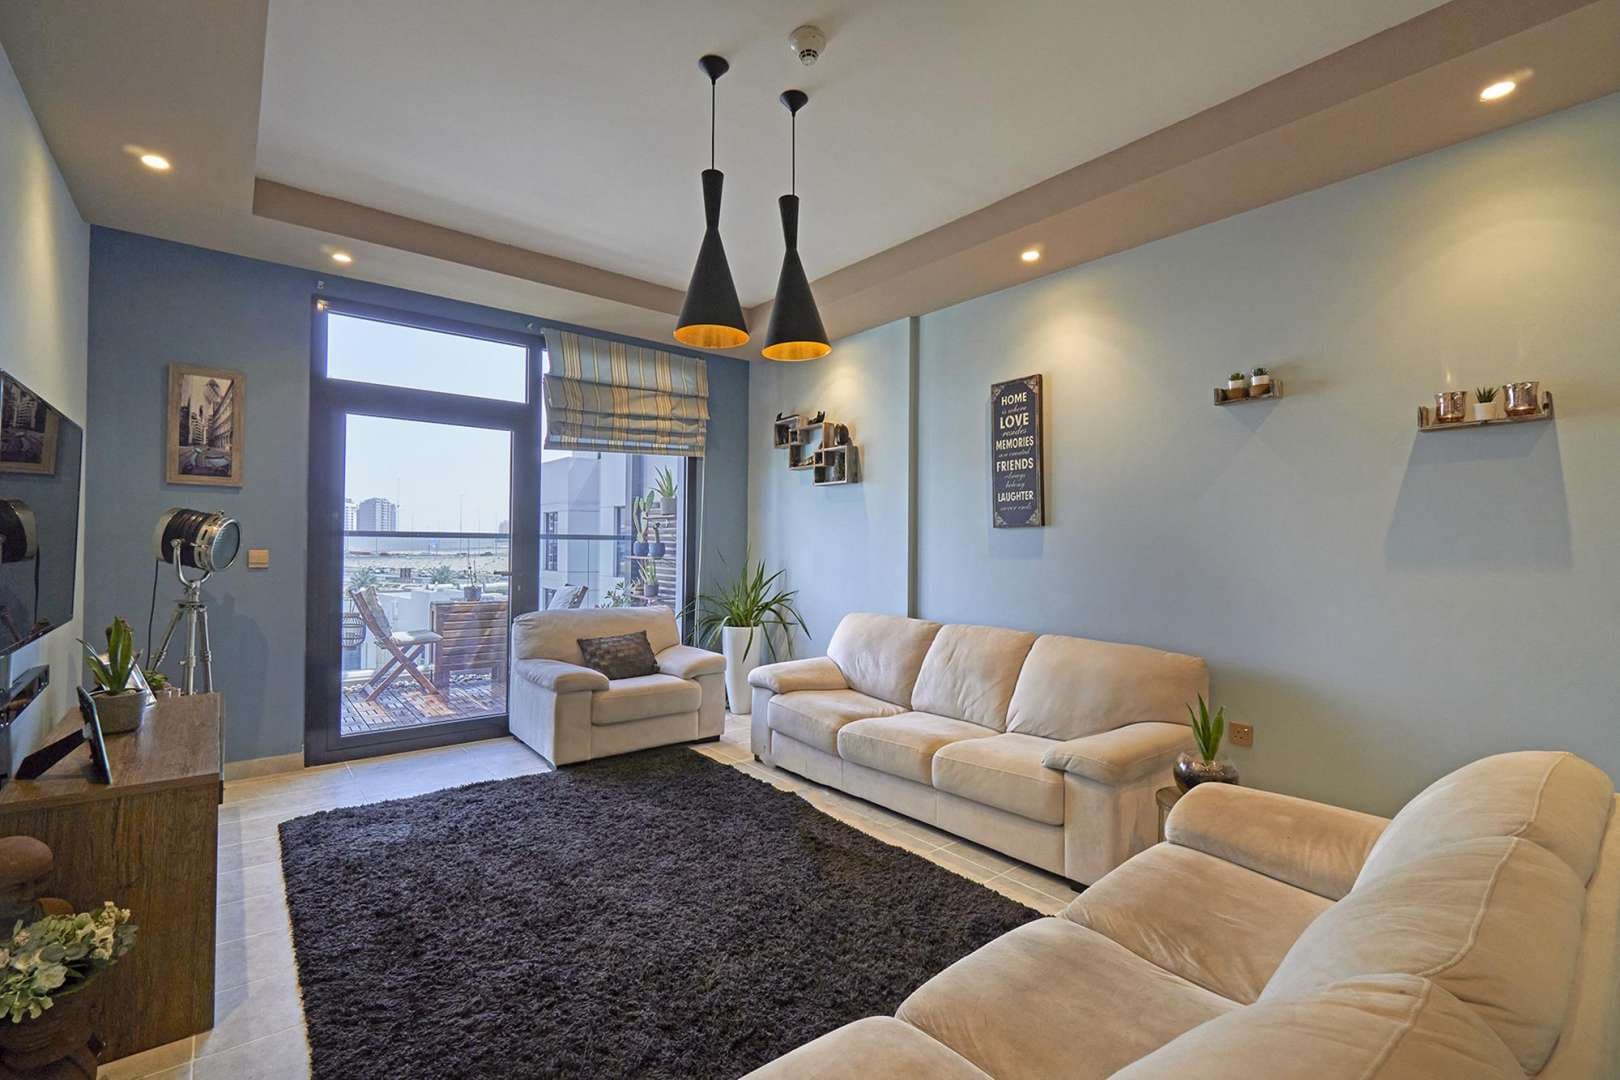 1 Bedroom Apartment For Sale Hyati Residence Lp06419 10fb9c036a8e9300.jpg